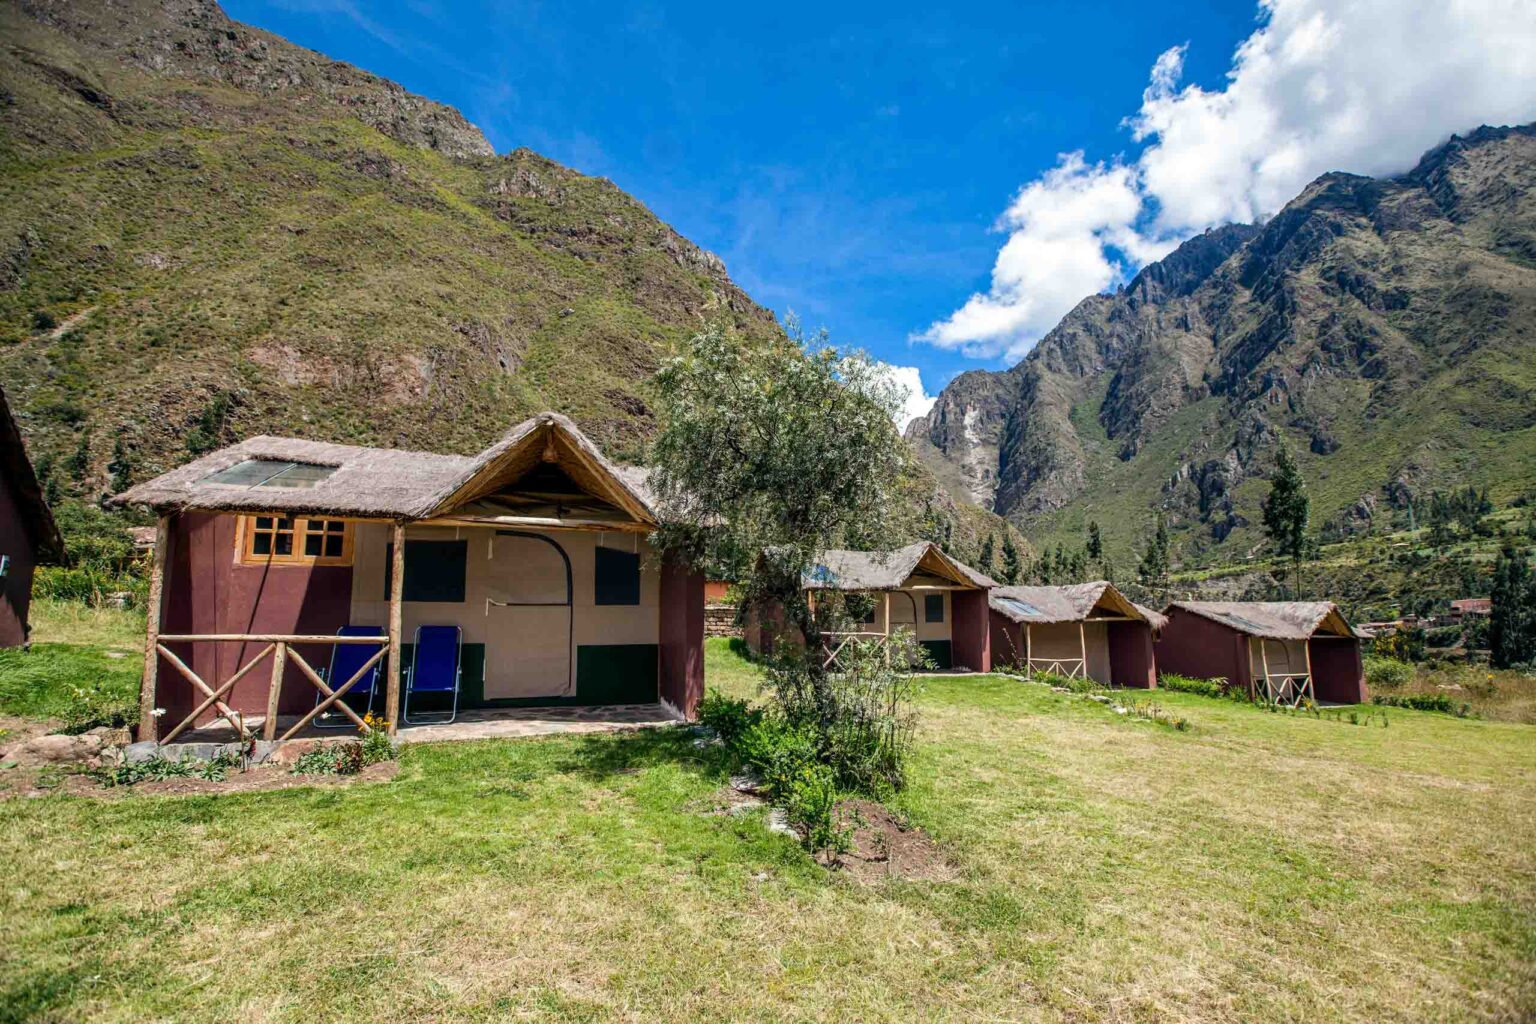 Inca trail campsite.